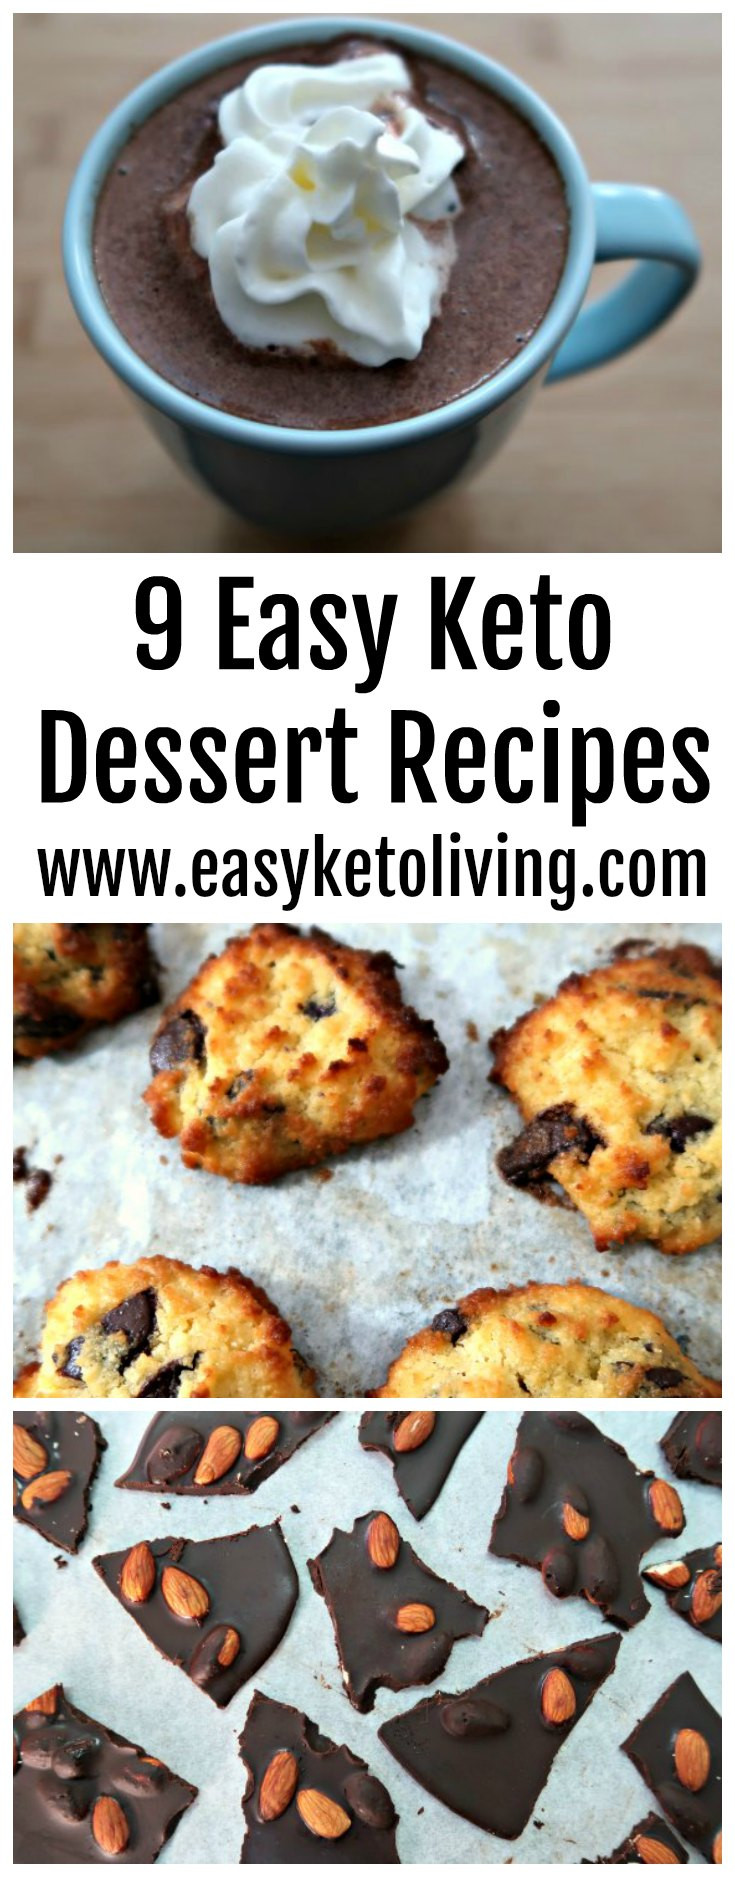 Keto Dessert Easy Quick
 9 Easy Keto Dessert Recipes Quick Low Carb Ketogenic